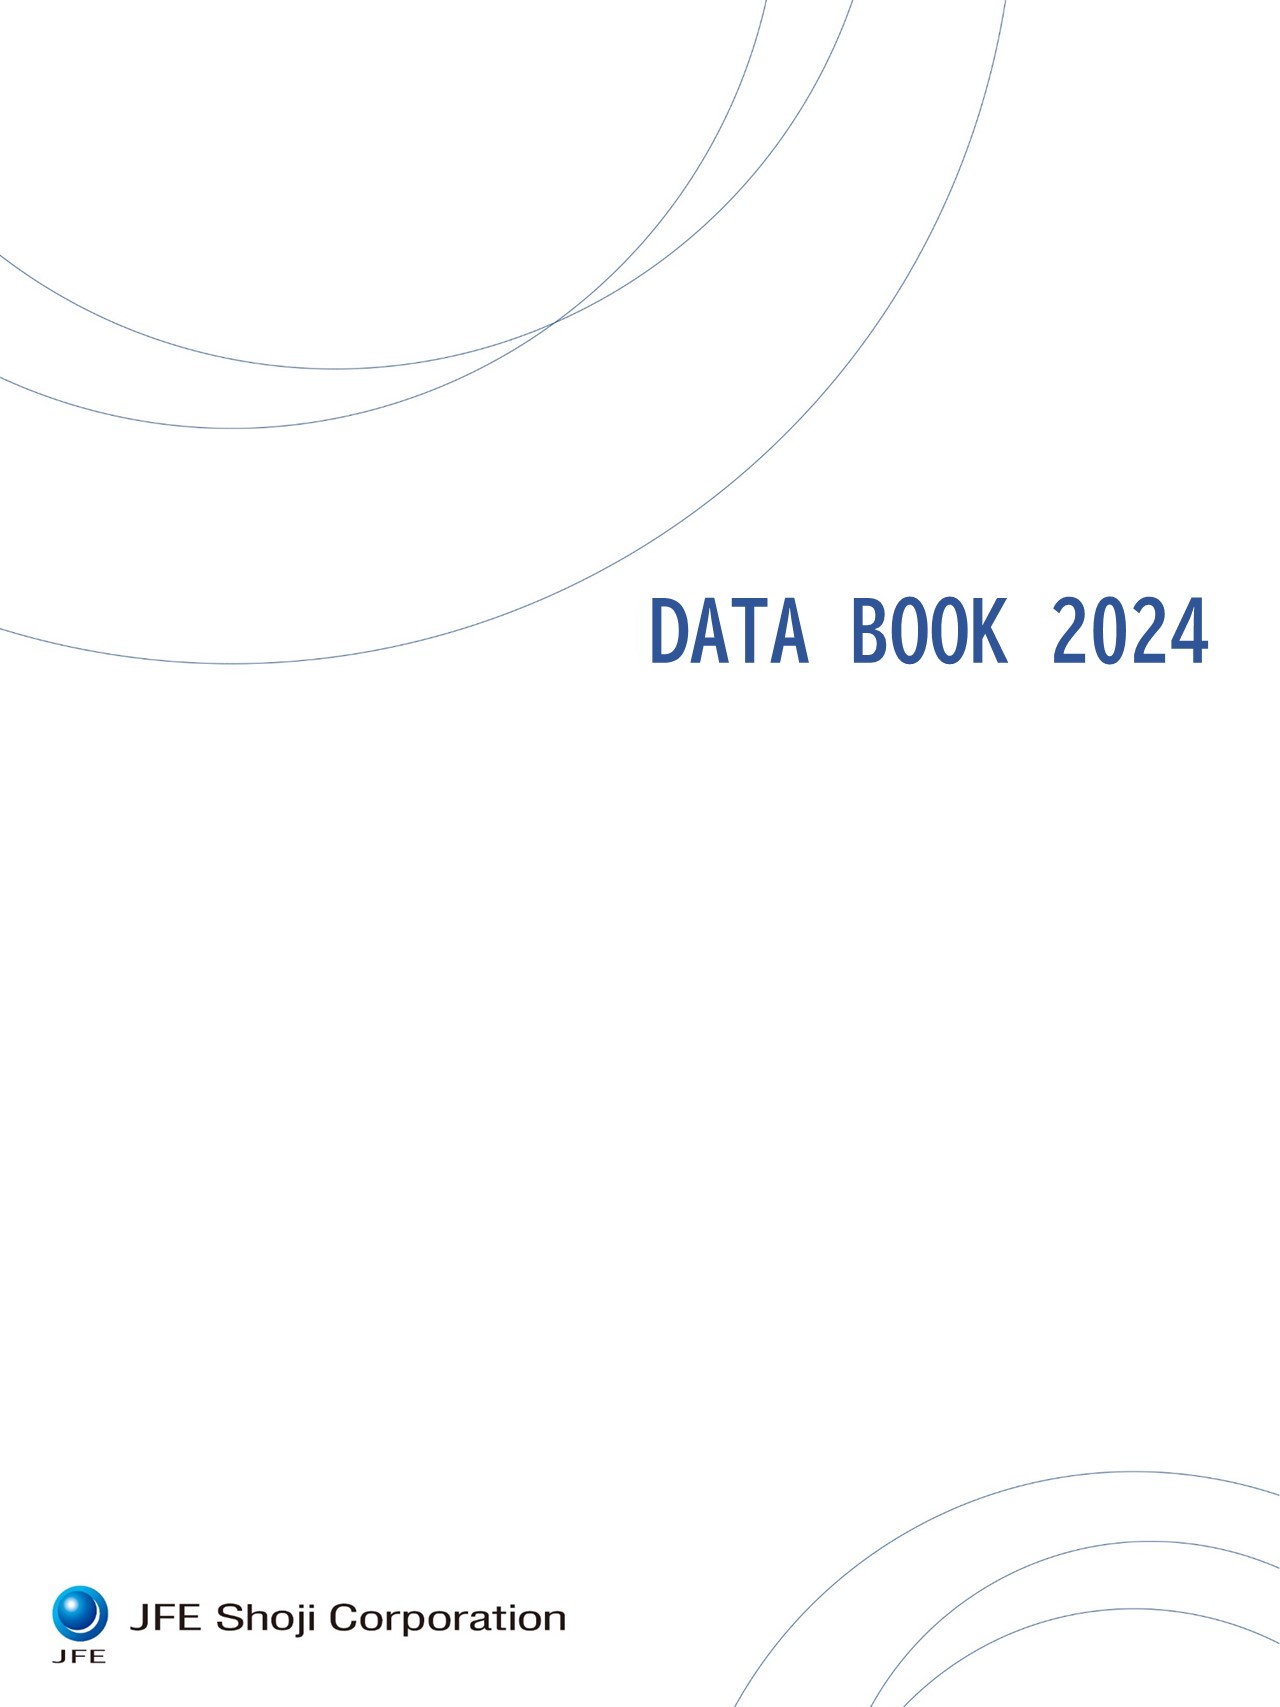 DATA BOOK 2022